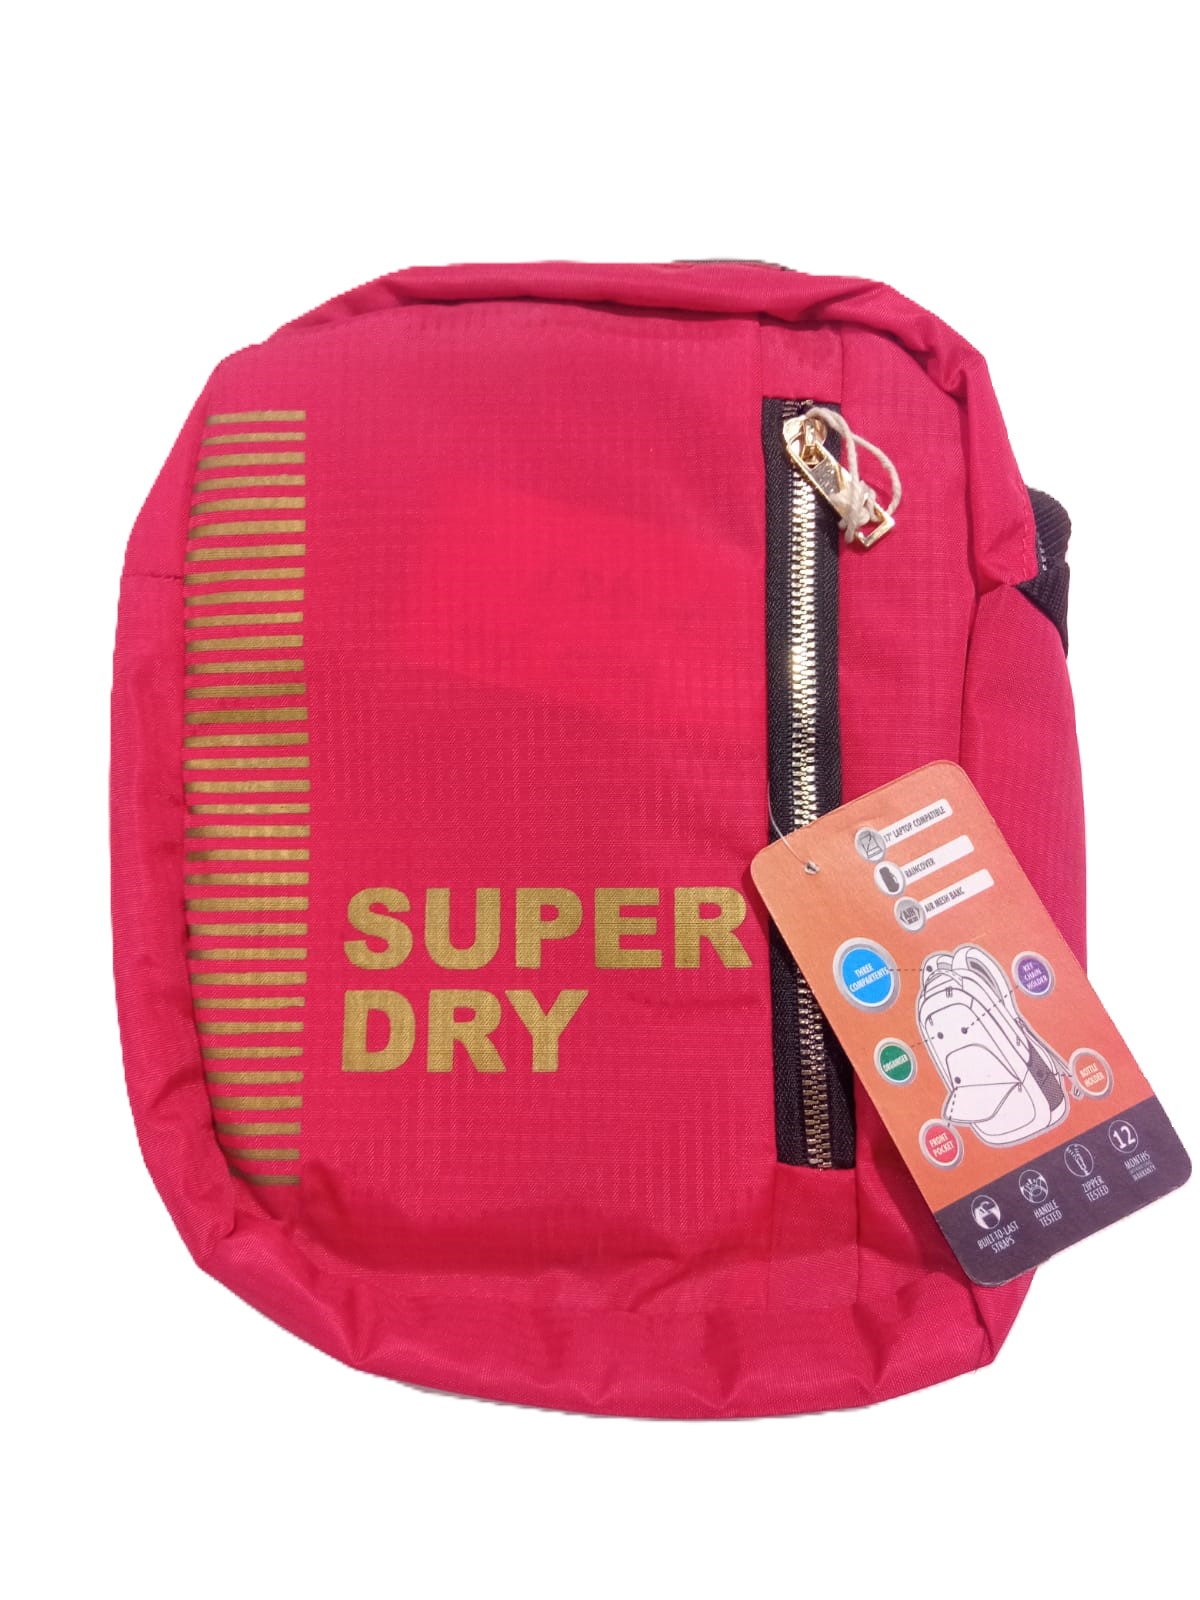 SuperDry Sling Bag For Boys